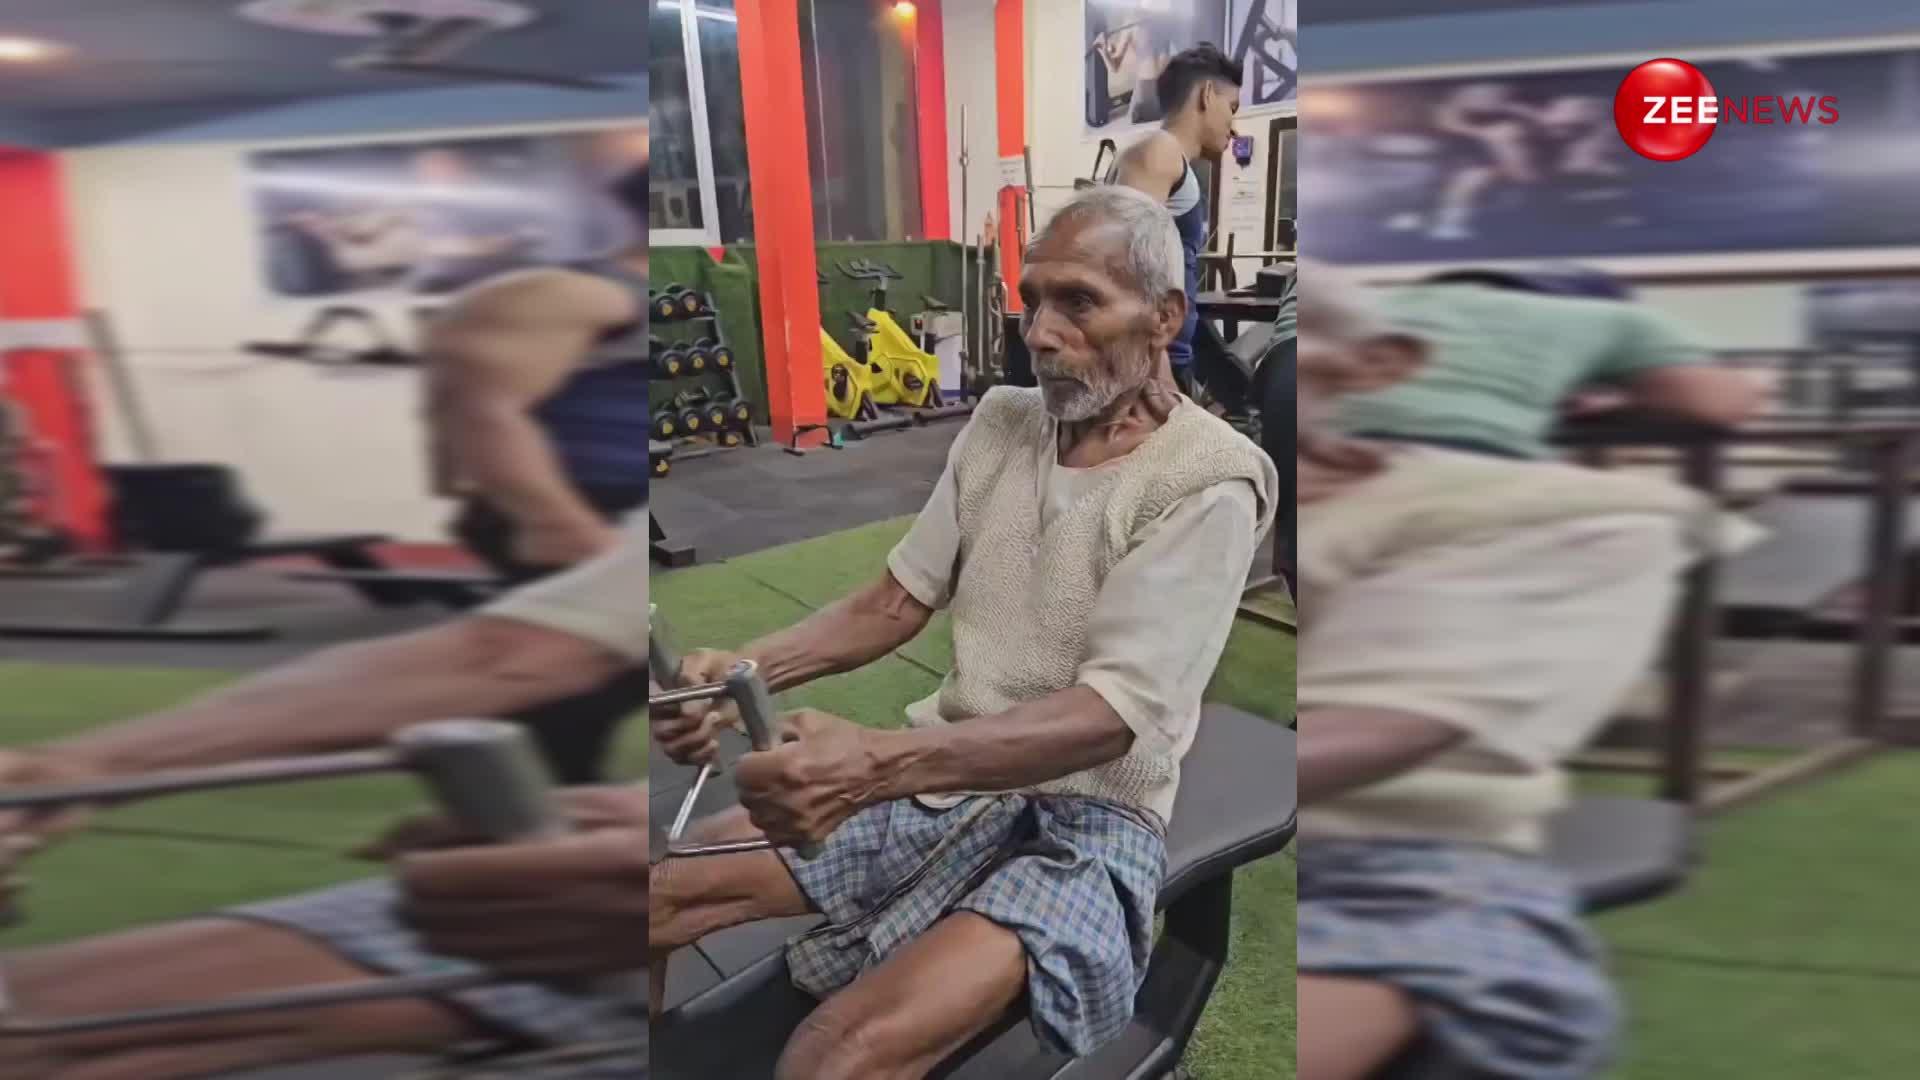 85 साल के दादा जी ने जिम जाकर किया हैवी वर्कआउट, वीडियो देख लोग बोले- शायद दिल टूटा है